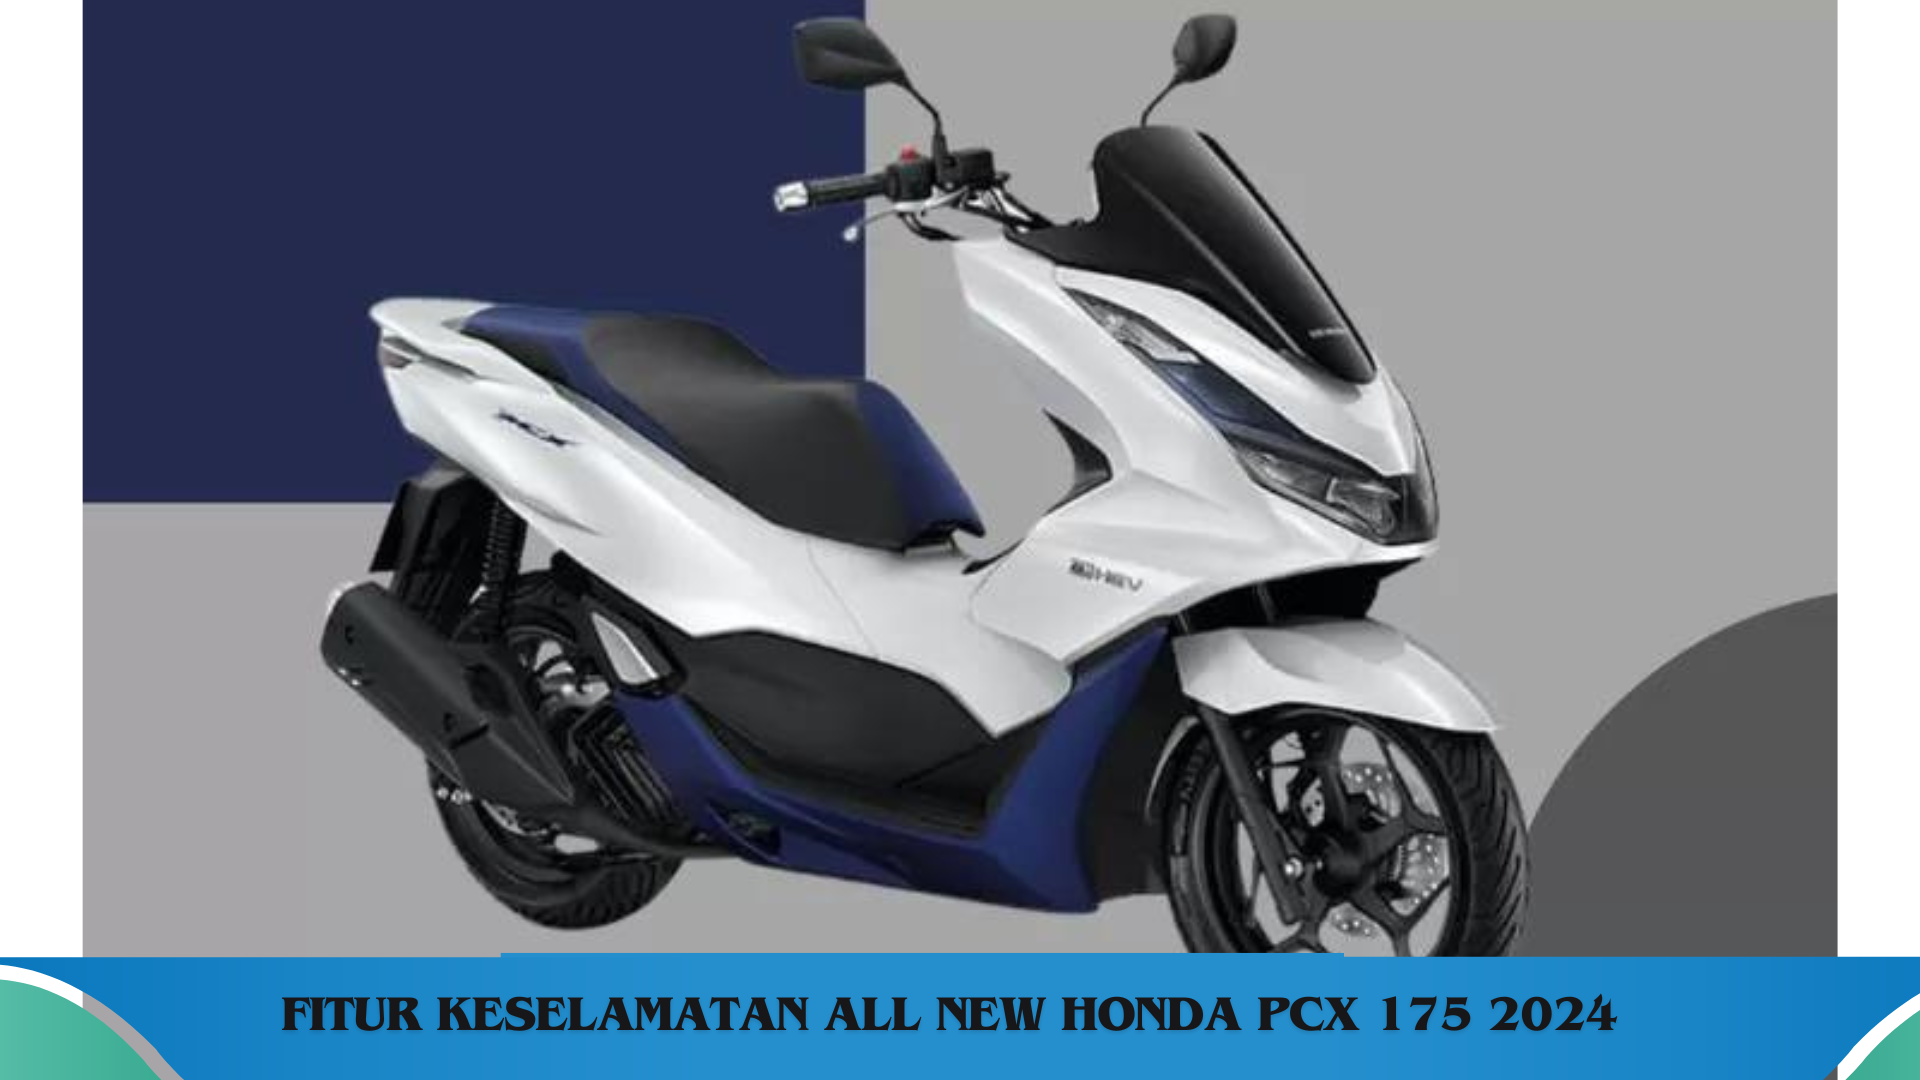 All New Honda PCX 175 2024, Punya Fitur Keselamatan ESP+ dan Desain Futuristik yang Memukau  